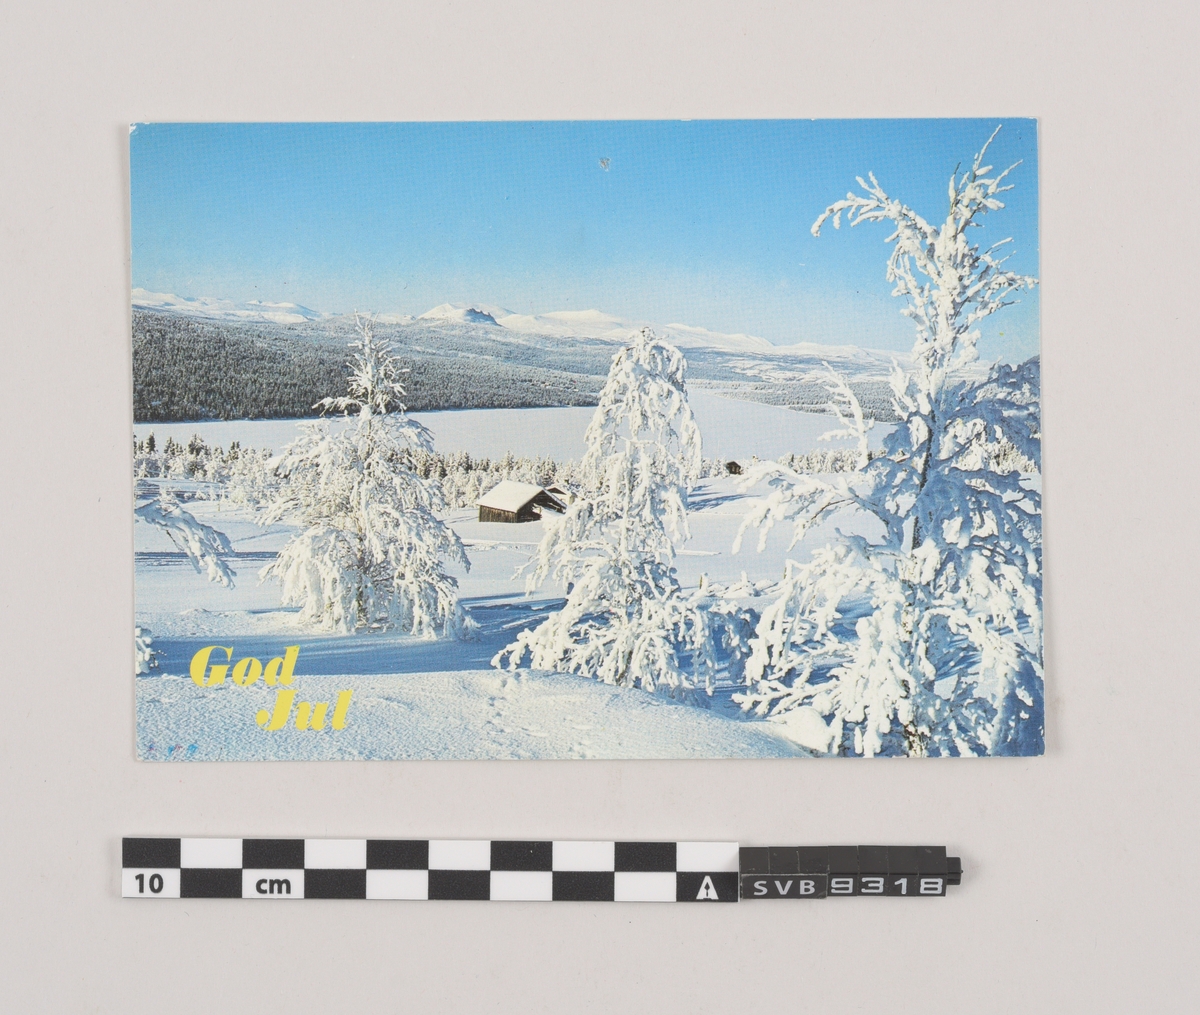 Tosidig kort. Fotografi av vinterlandskap og trykk på forsiden, frimerke, stempel, klistermerke, trykk og håndskrevet hilsen på baksiden.